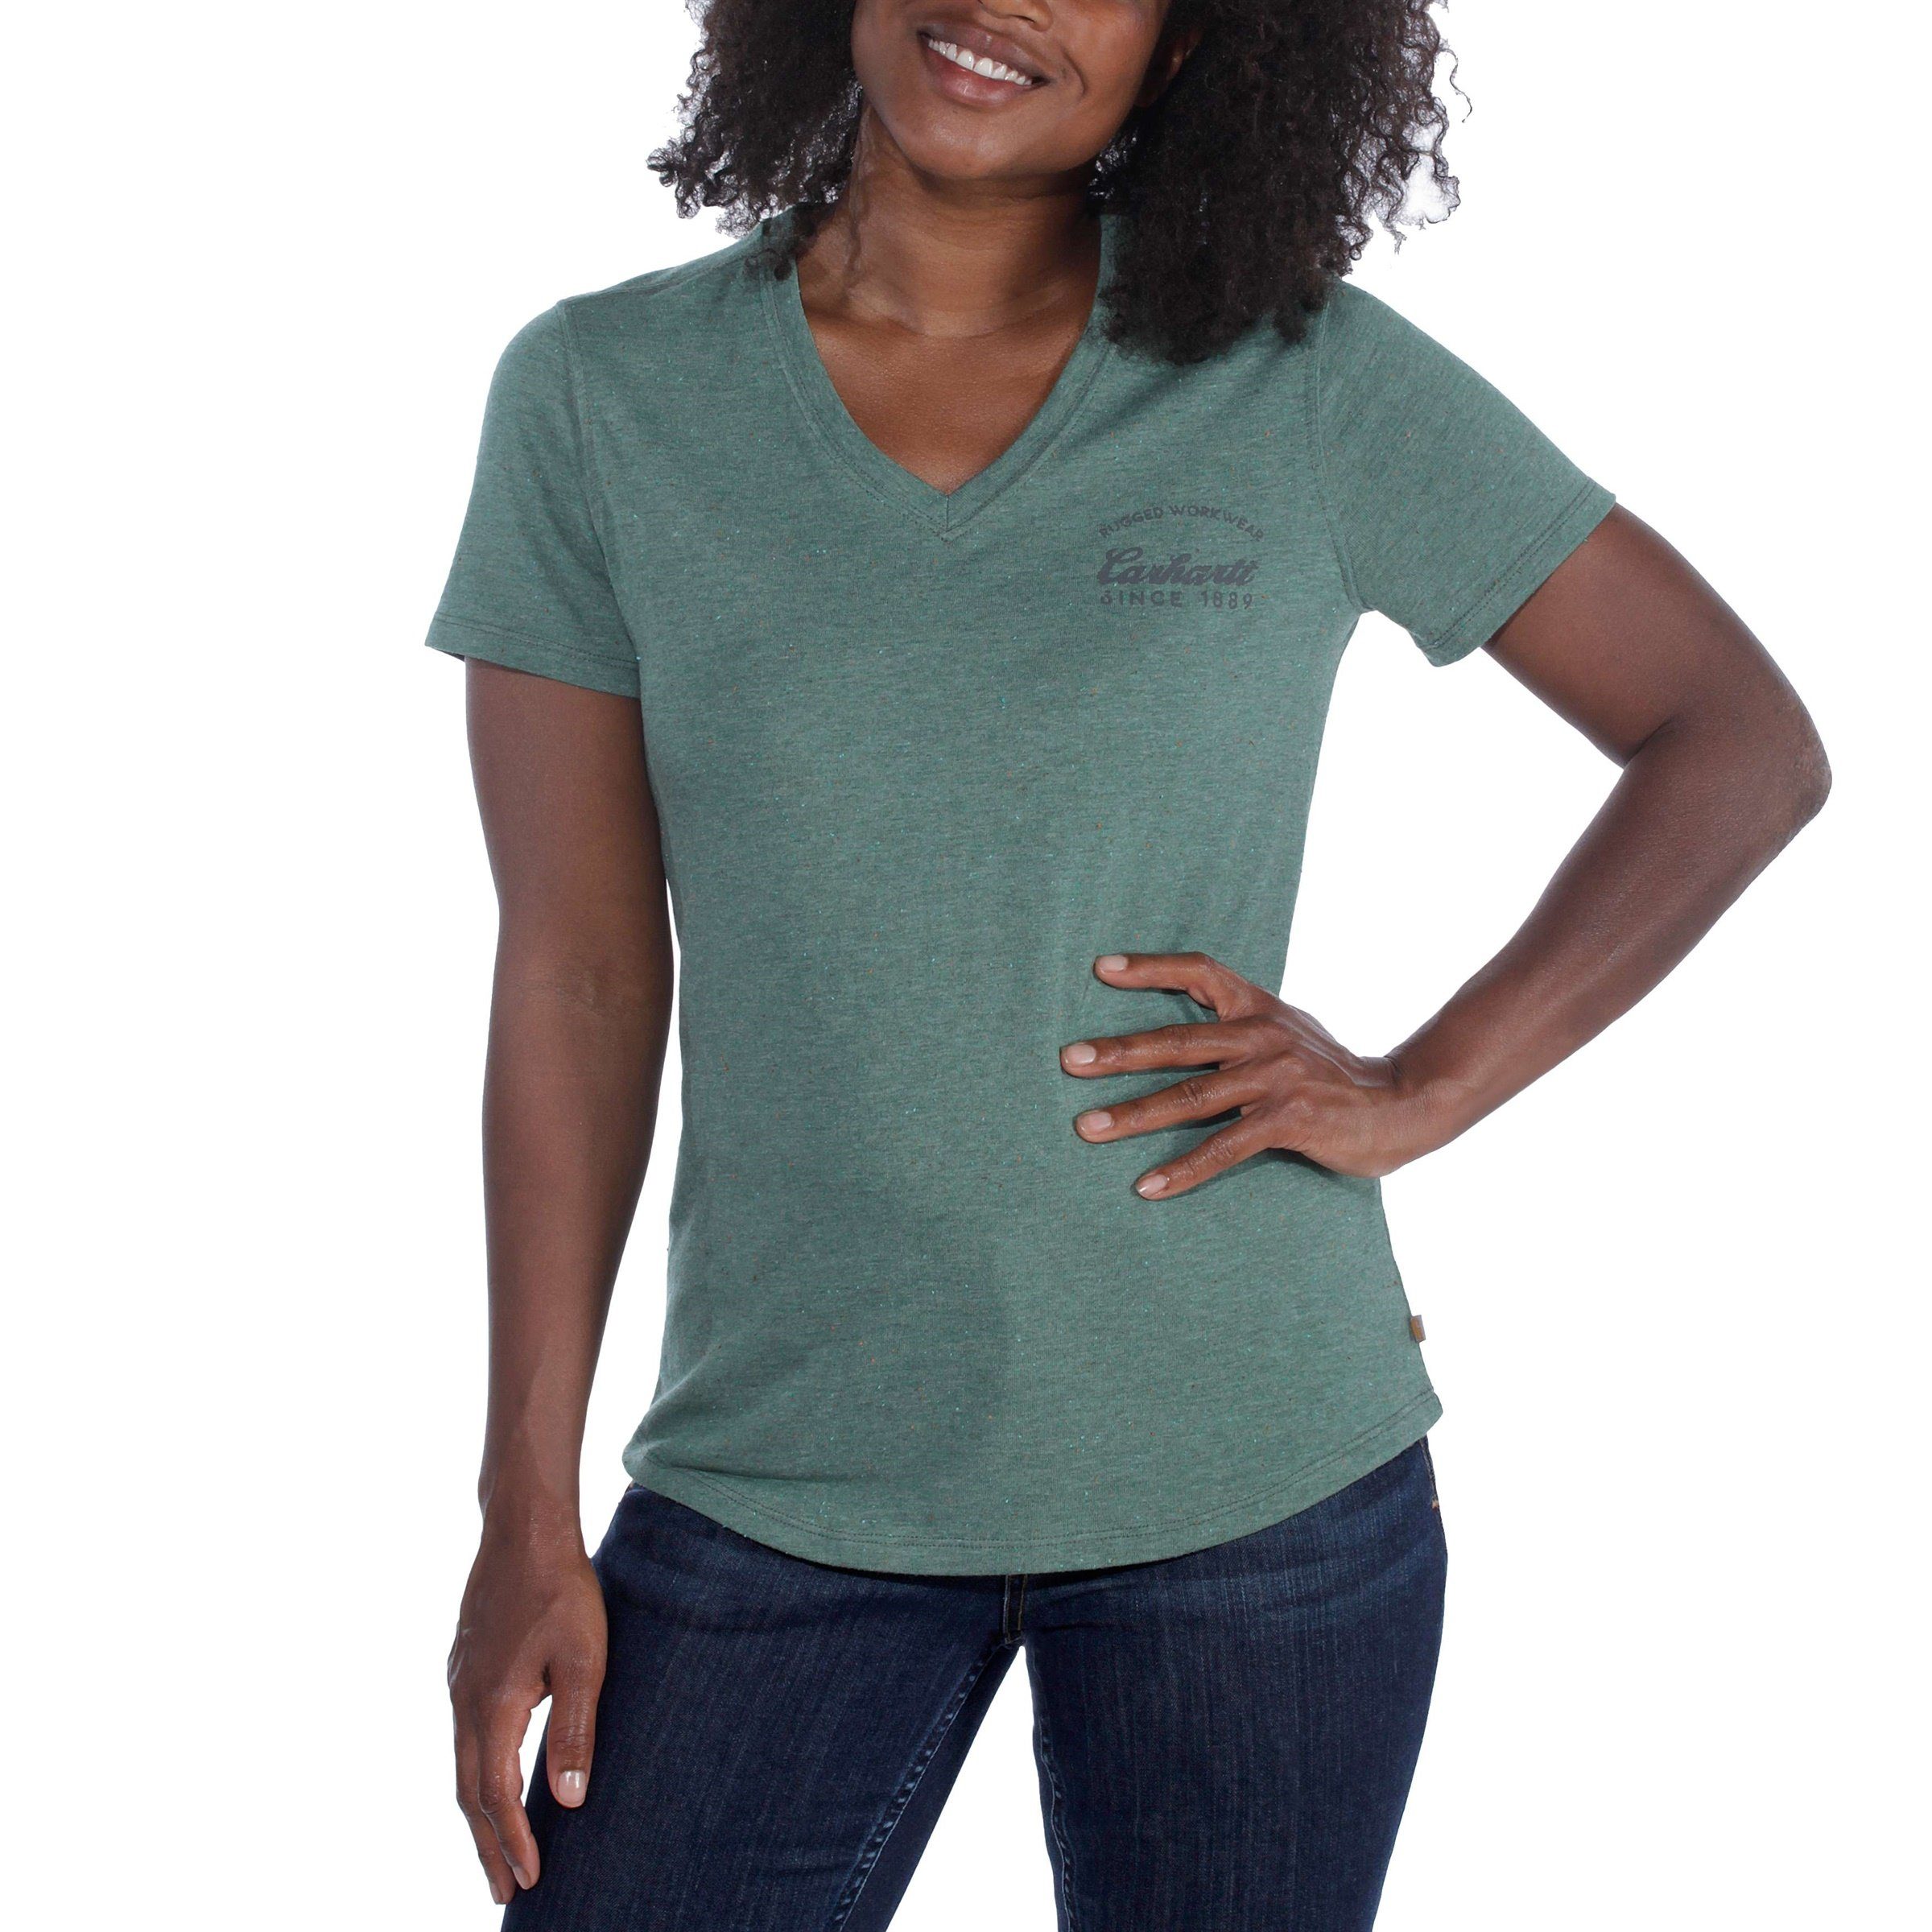 Lockhart Carhartt T-Shirt green nep T-Shirt Carhartt heather Adult Damen Carhartt Graphic musk